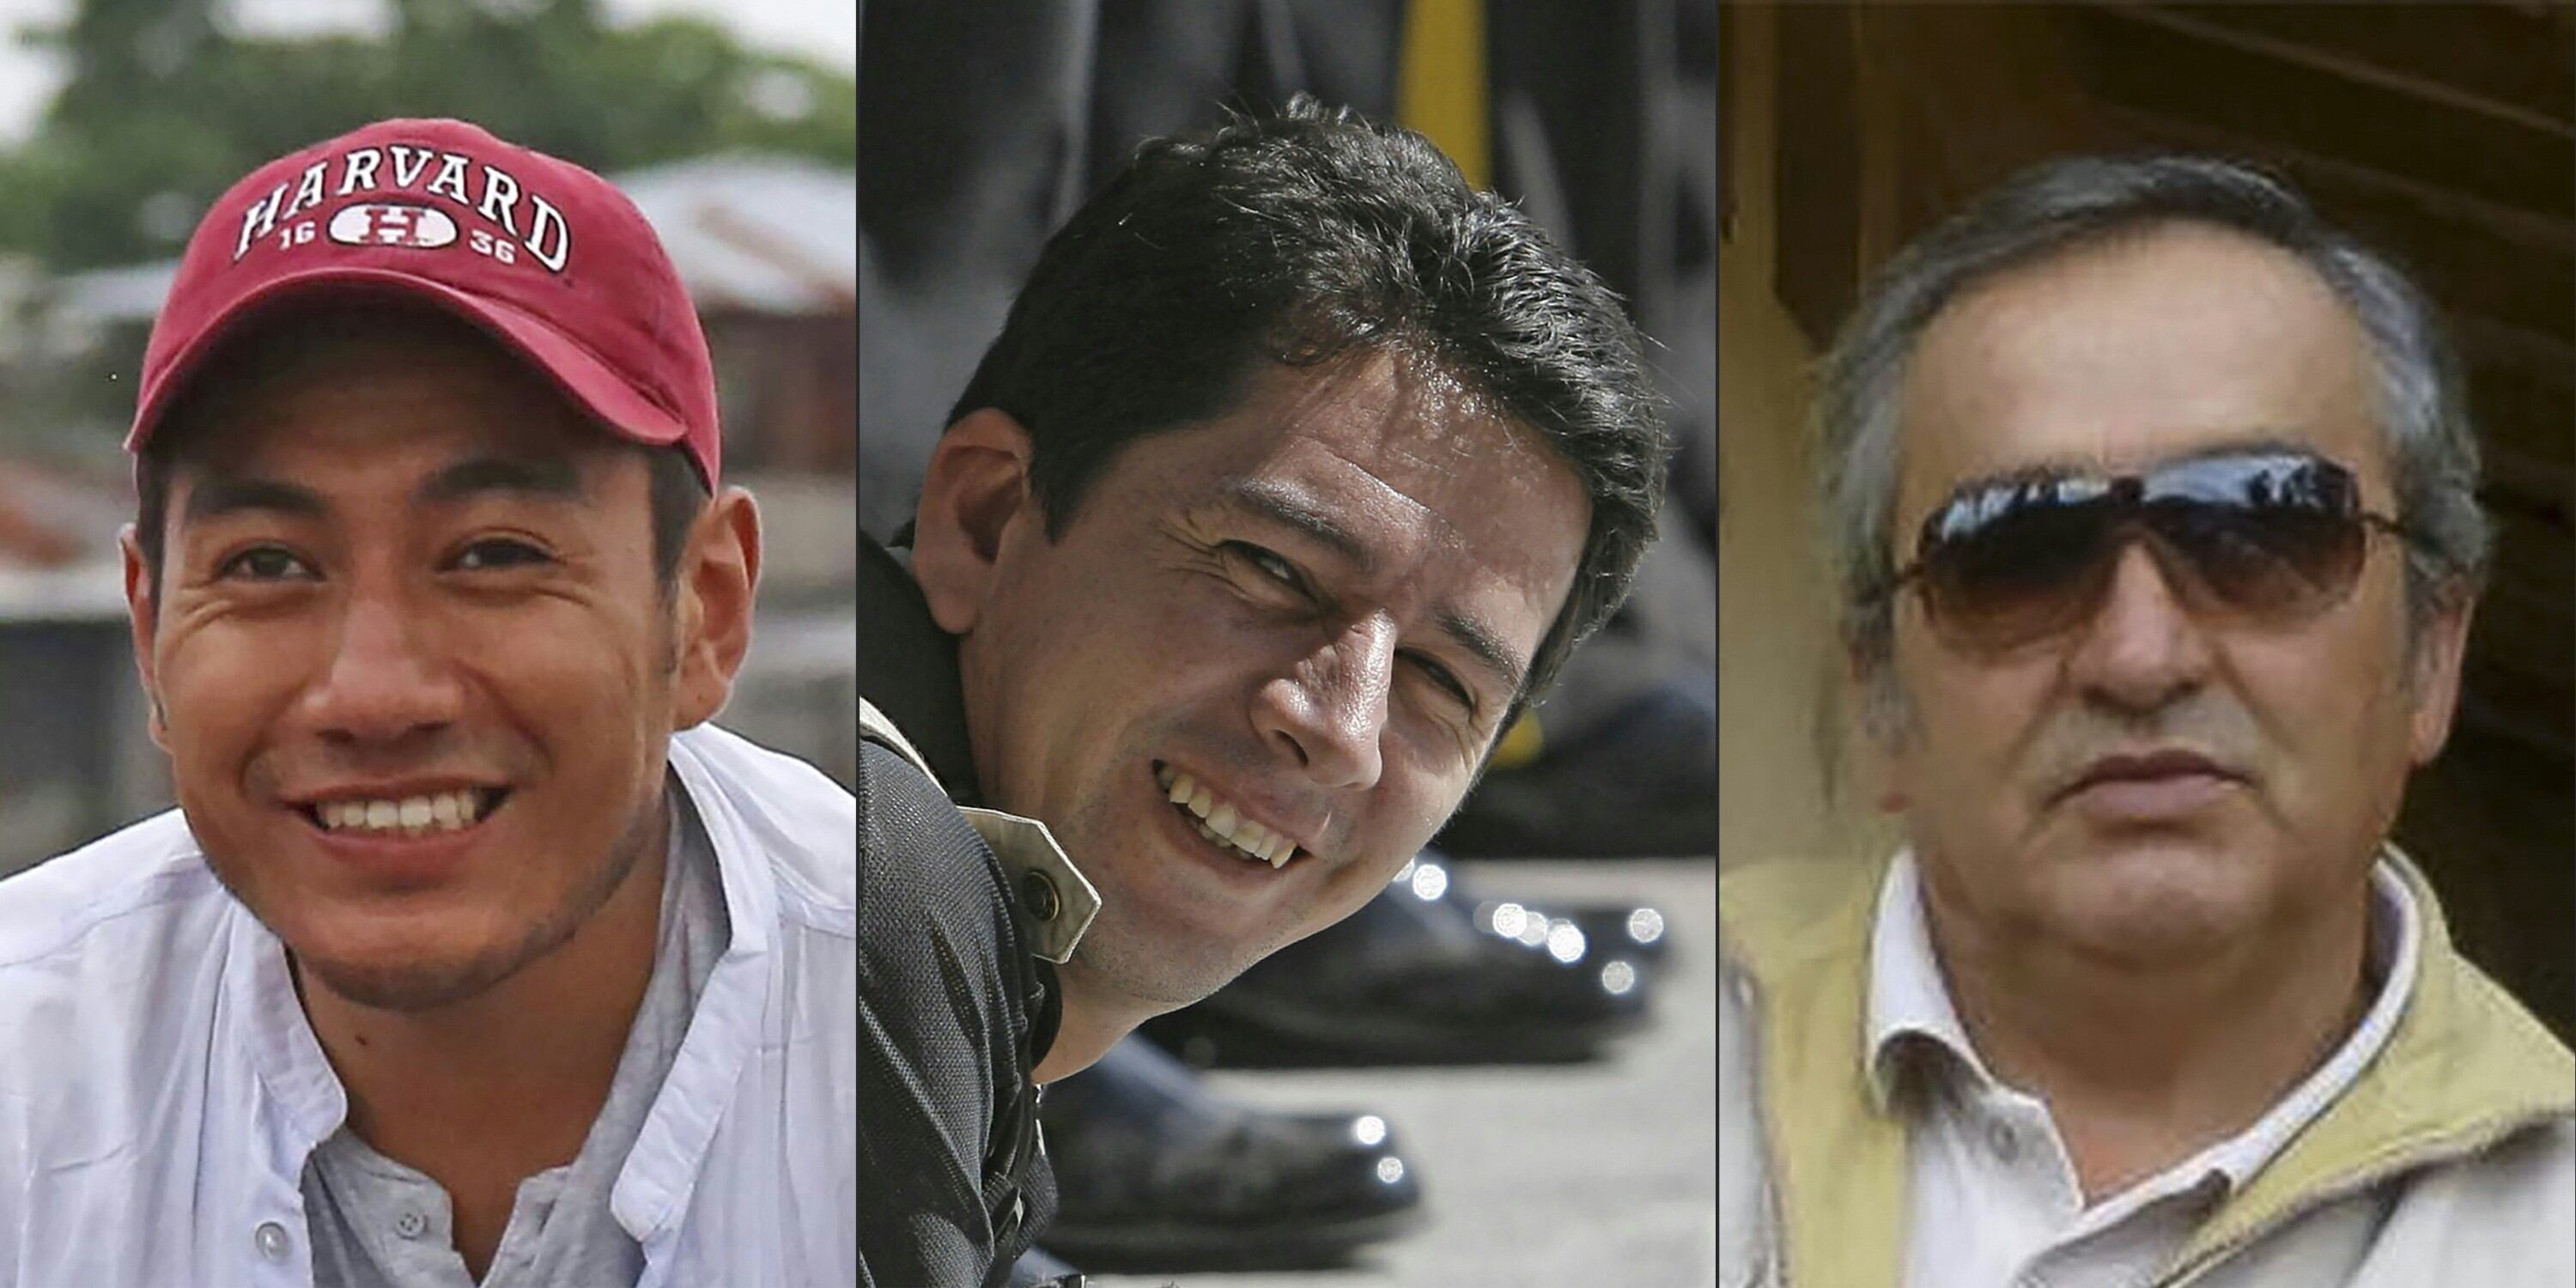 Ortega (32 años), Rivas (45) y Segarra (60) fueron secuestrados por disidentes de la exguerrilla de las FARC el 26 de marzo en la localidad costera de Mataje, limítrofe con Colombia.